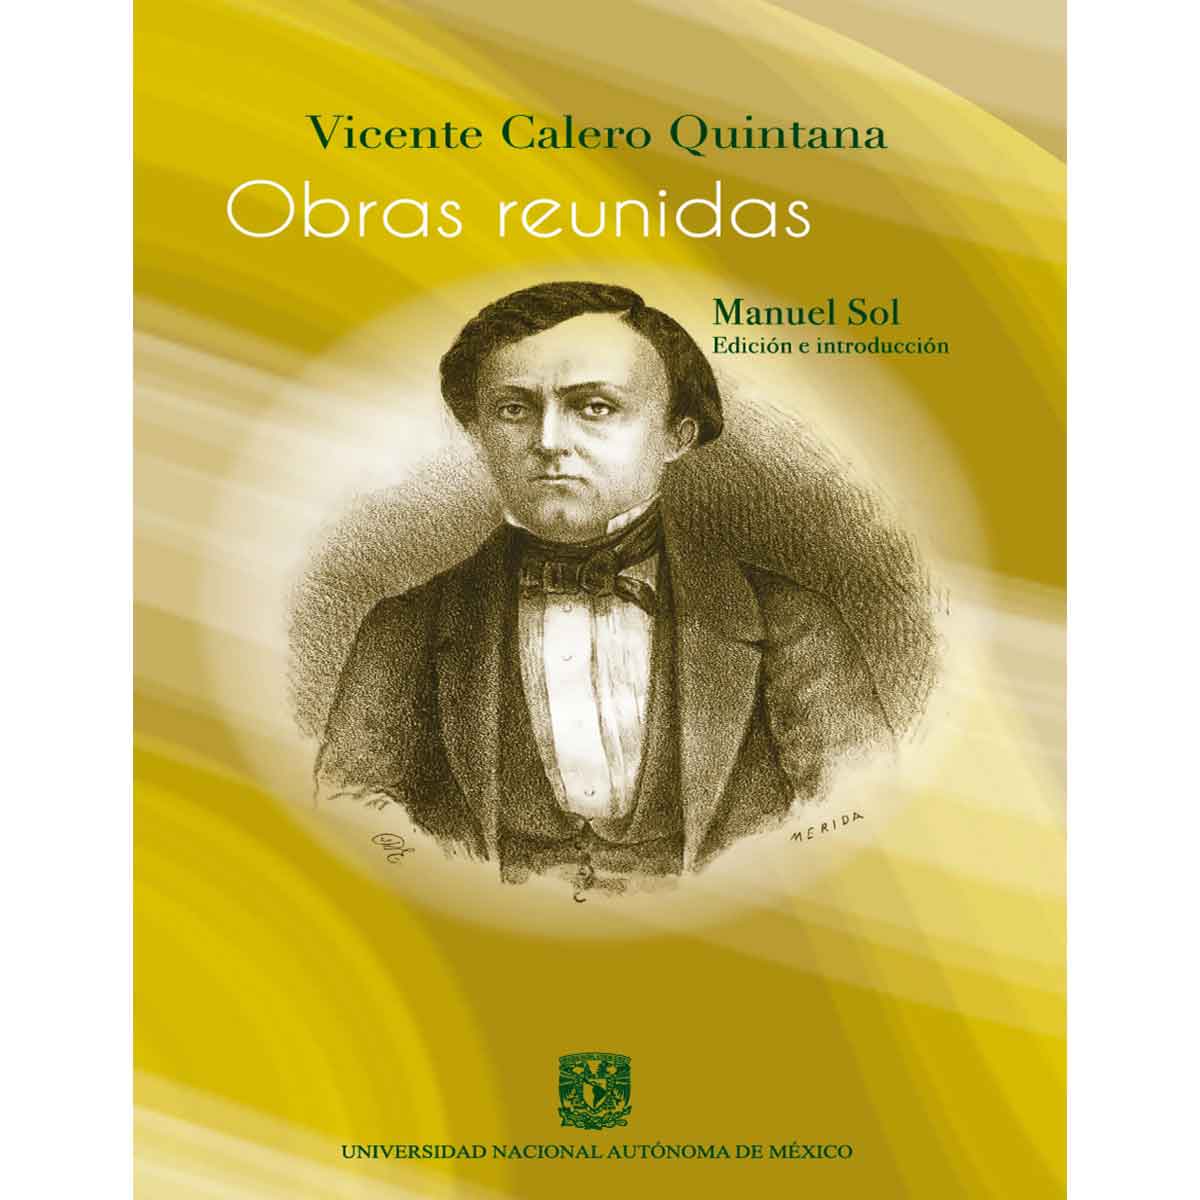 VICENTE CALERO QUINTANA. OBRAS REUNIDAS